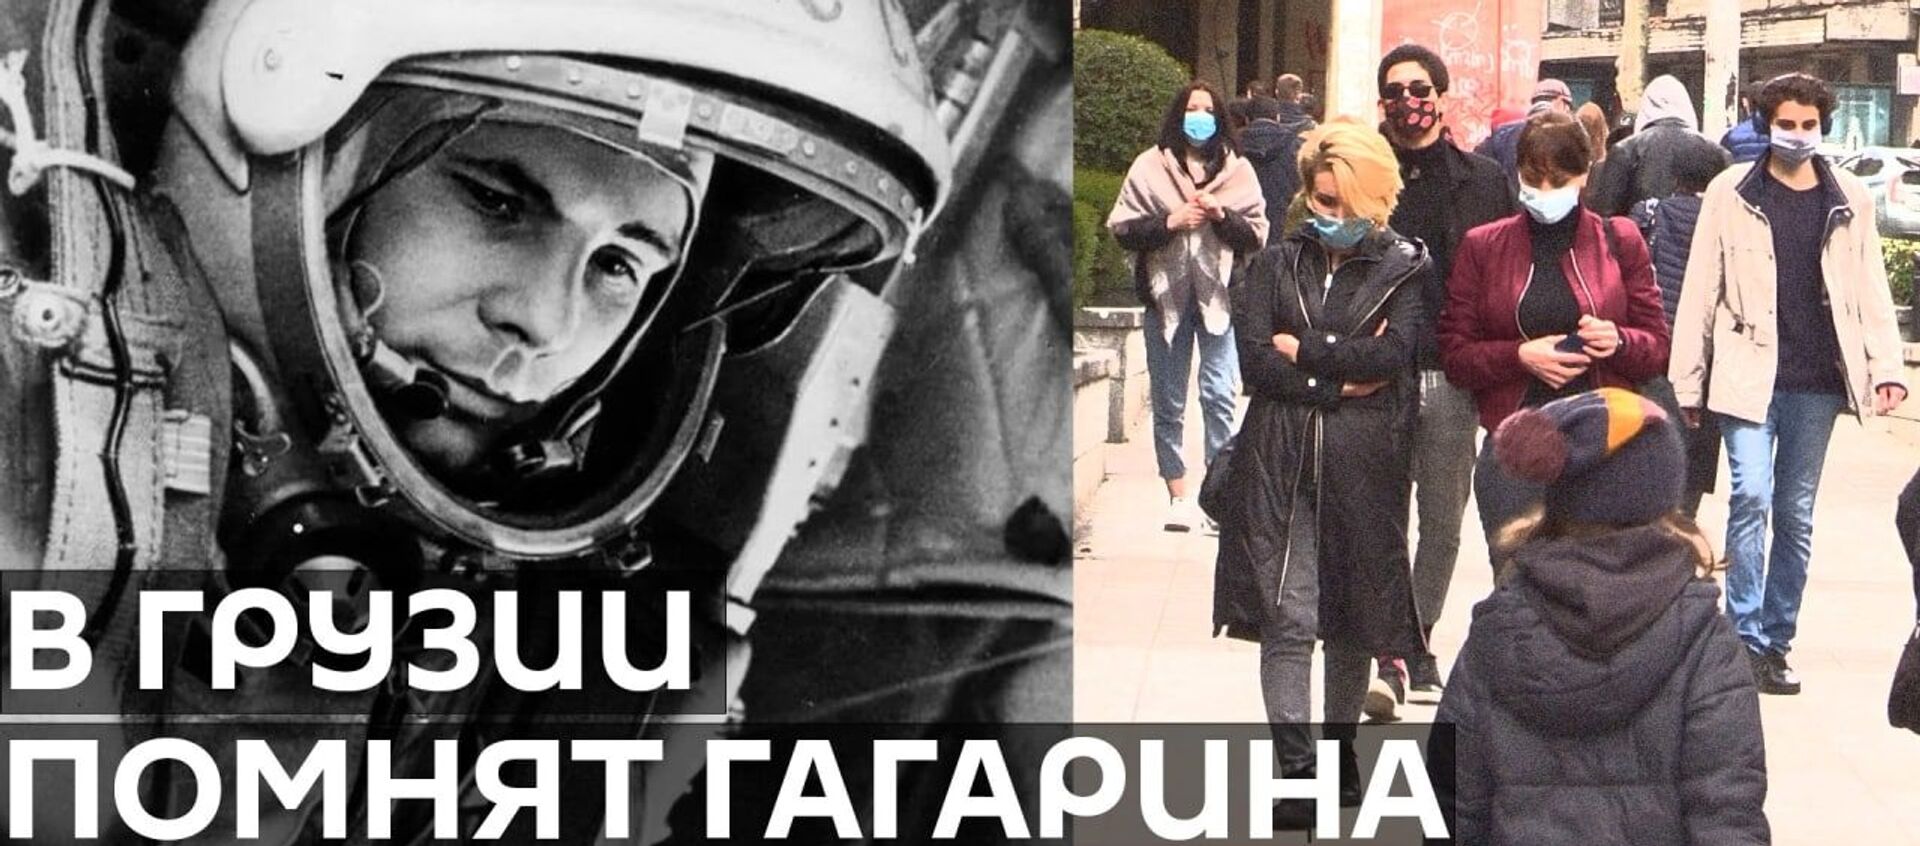 Первый полет в космос или Знают ли в Тбилиси, кем был Юрий Гагарин? - видео - Sputnik Грузия, 1920, 12.04.2021